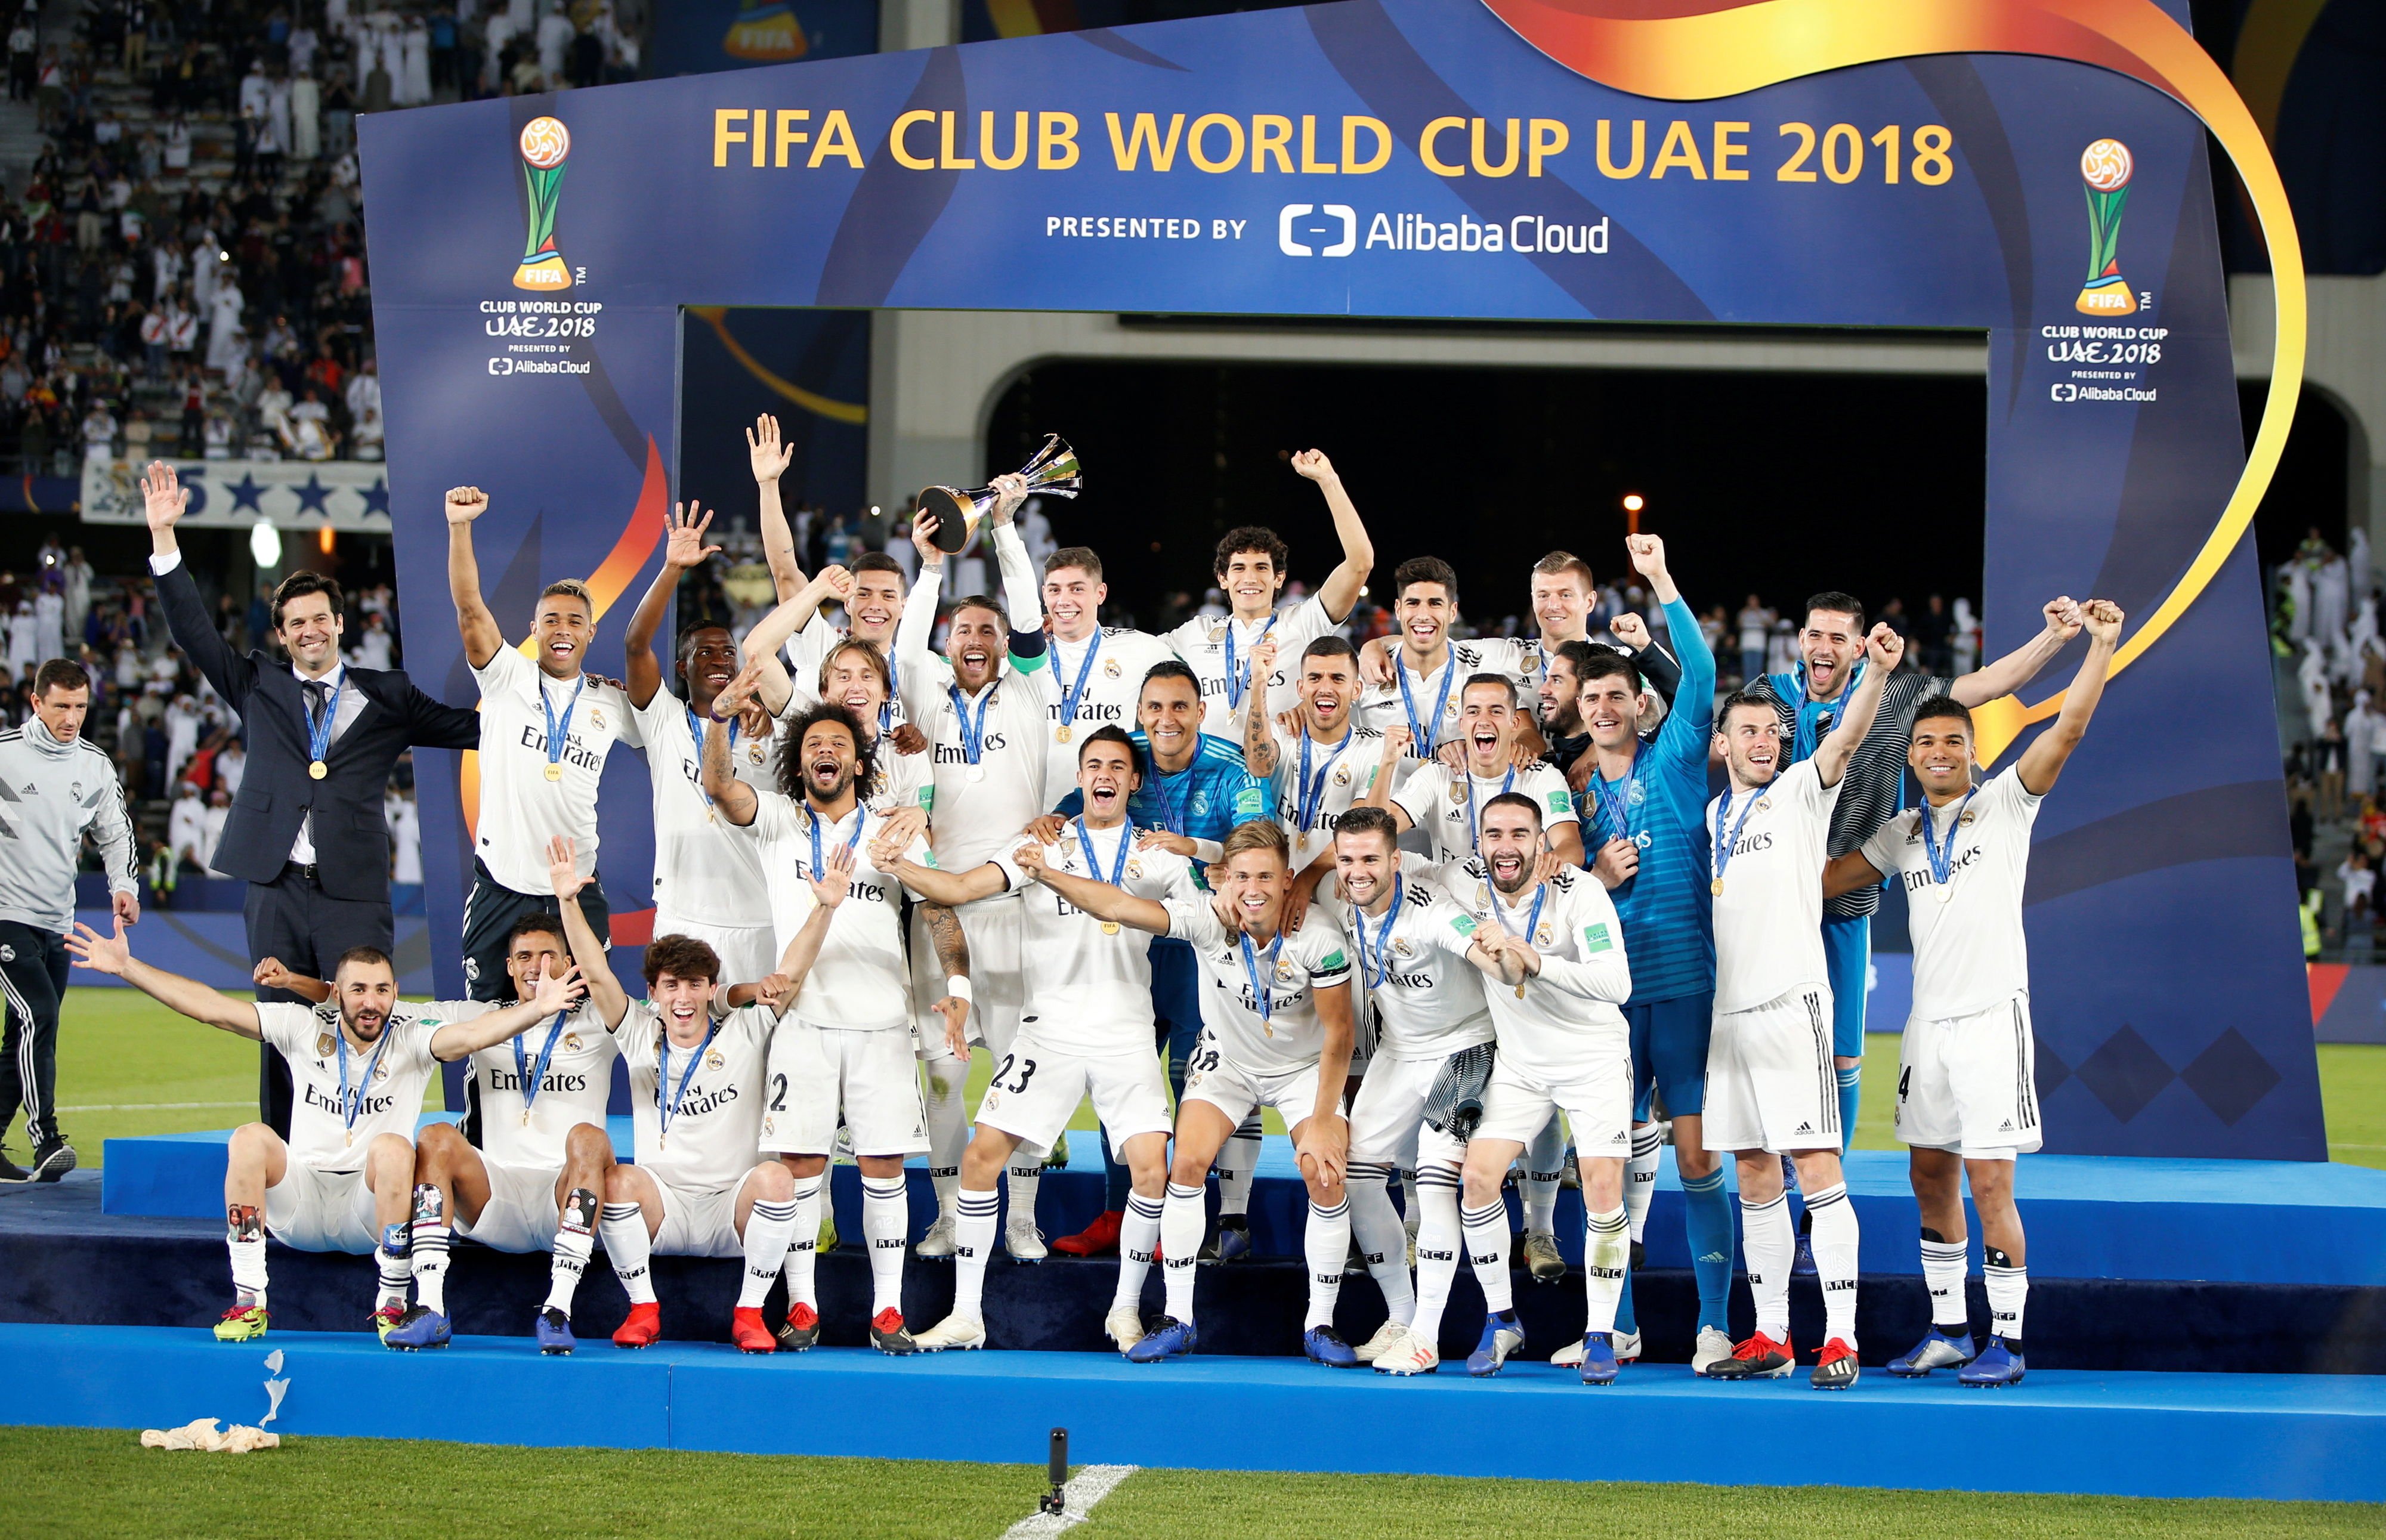 El Madrid, campeón del mundo por tercer año consecutivo (4-1)